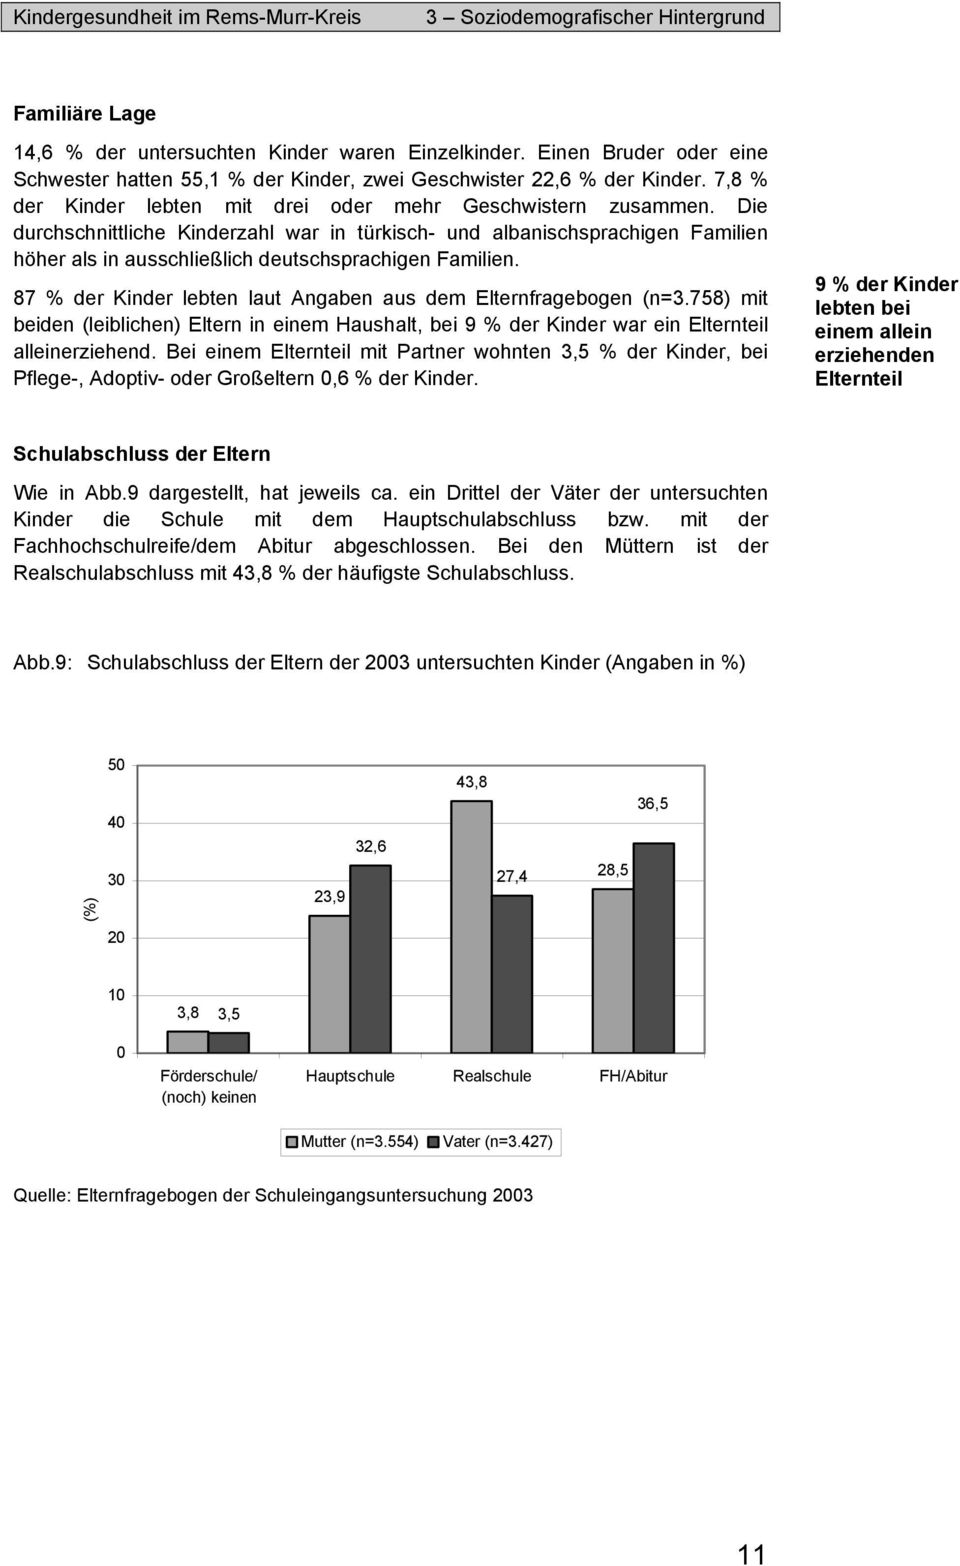 Die durchschnittliche Kinderzahl war in türkisch- und albanischsprachigen Familien höher als in ausschließlich deutschsprachigen Familien.